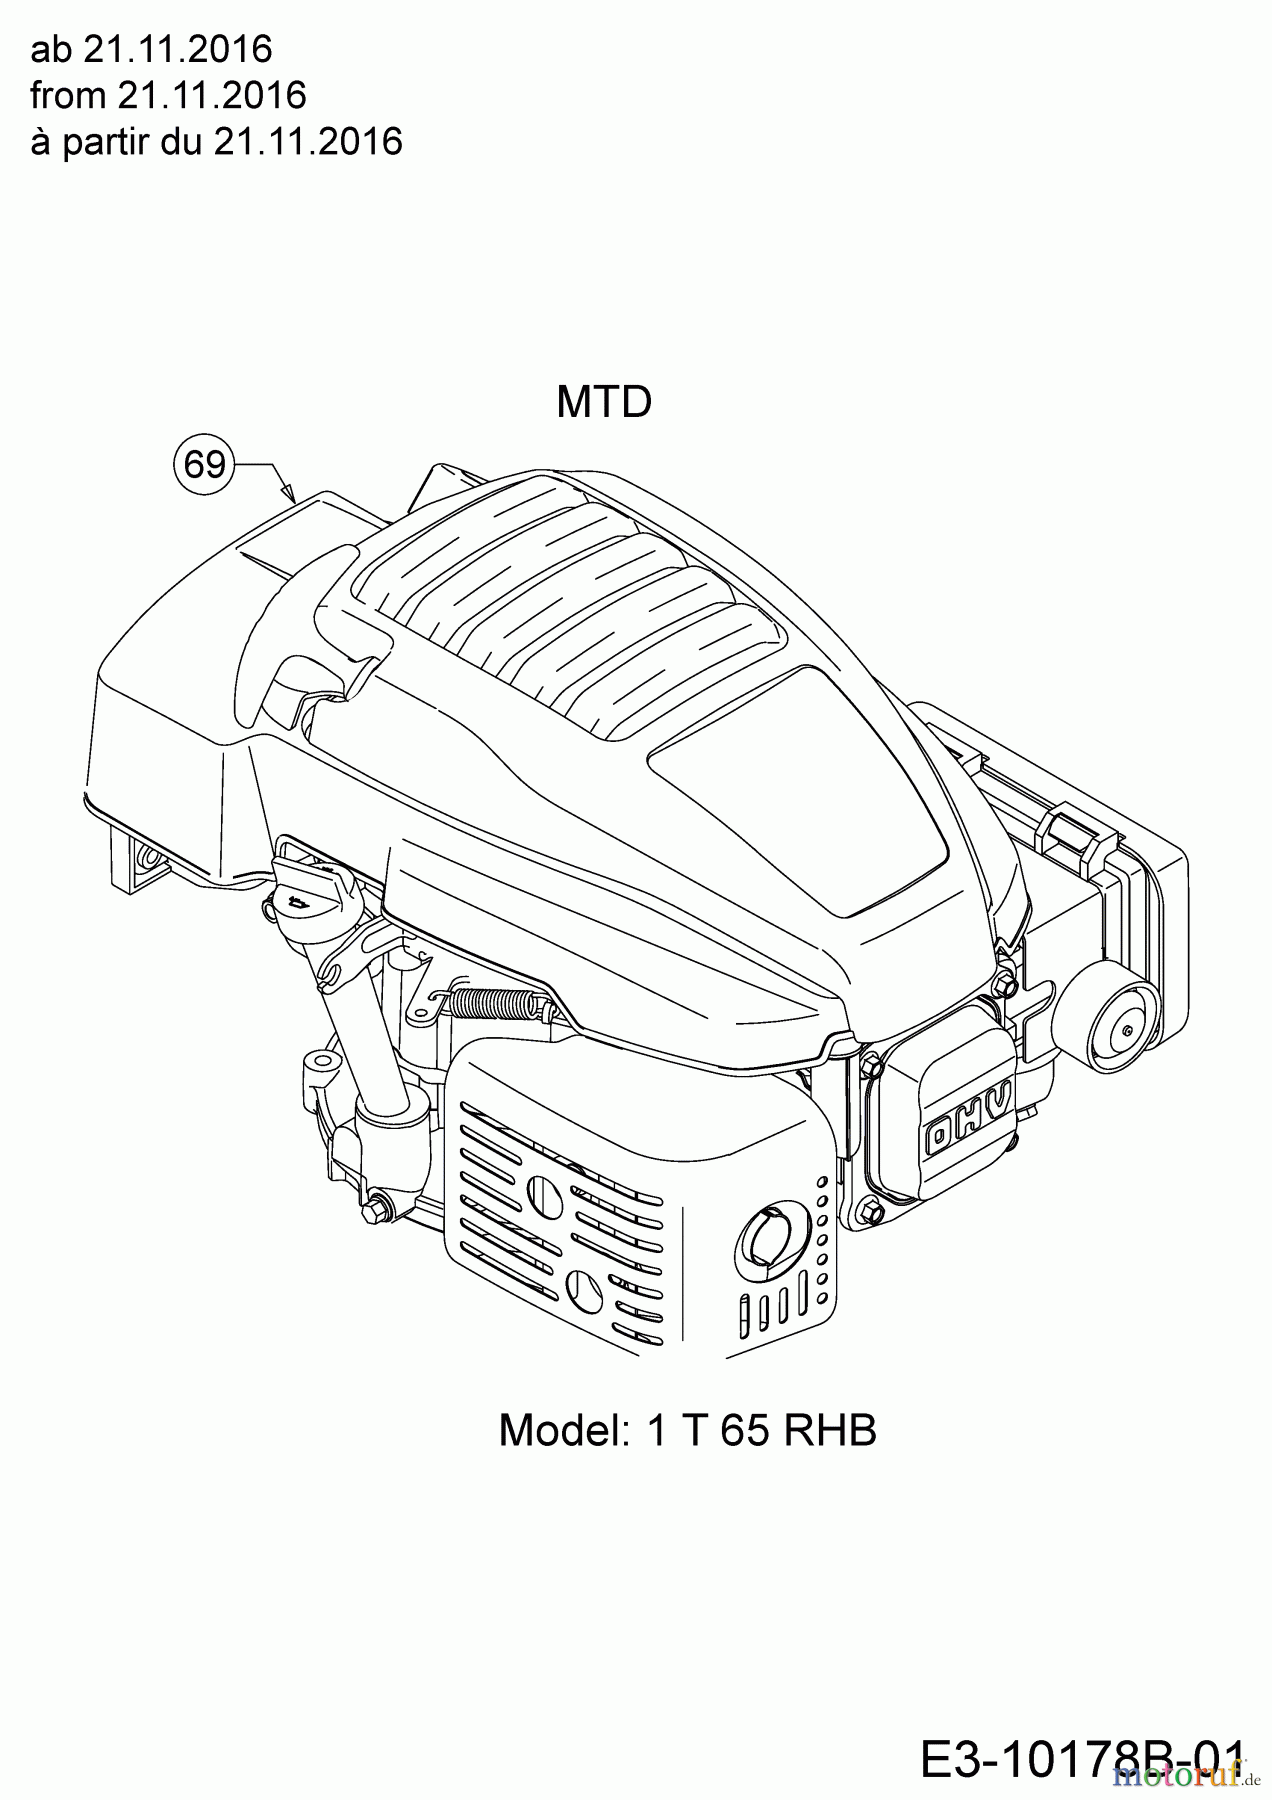  MTD Motormäher mit Antrieb Smart 46 SPOHW 12A-TBS4600  (2017) Motor MTD ab 21.11.2016